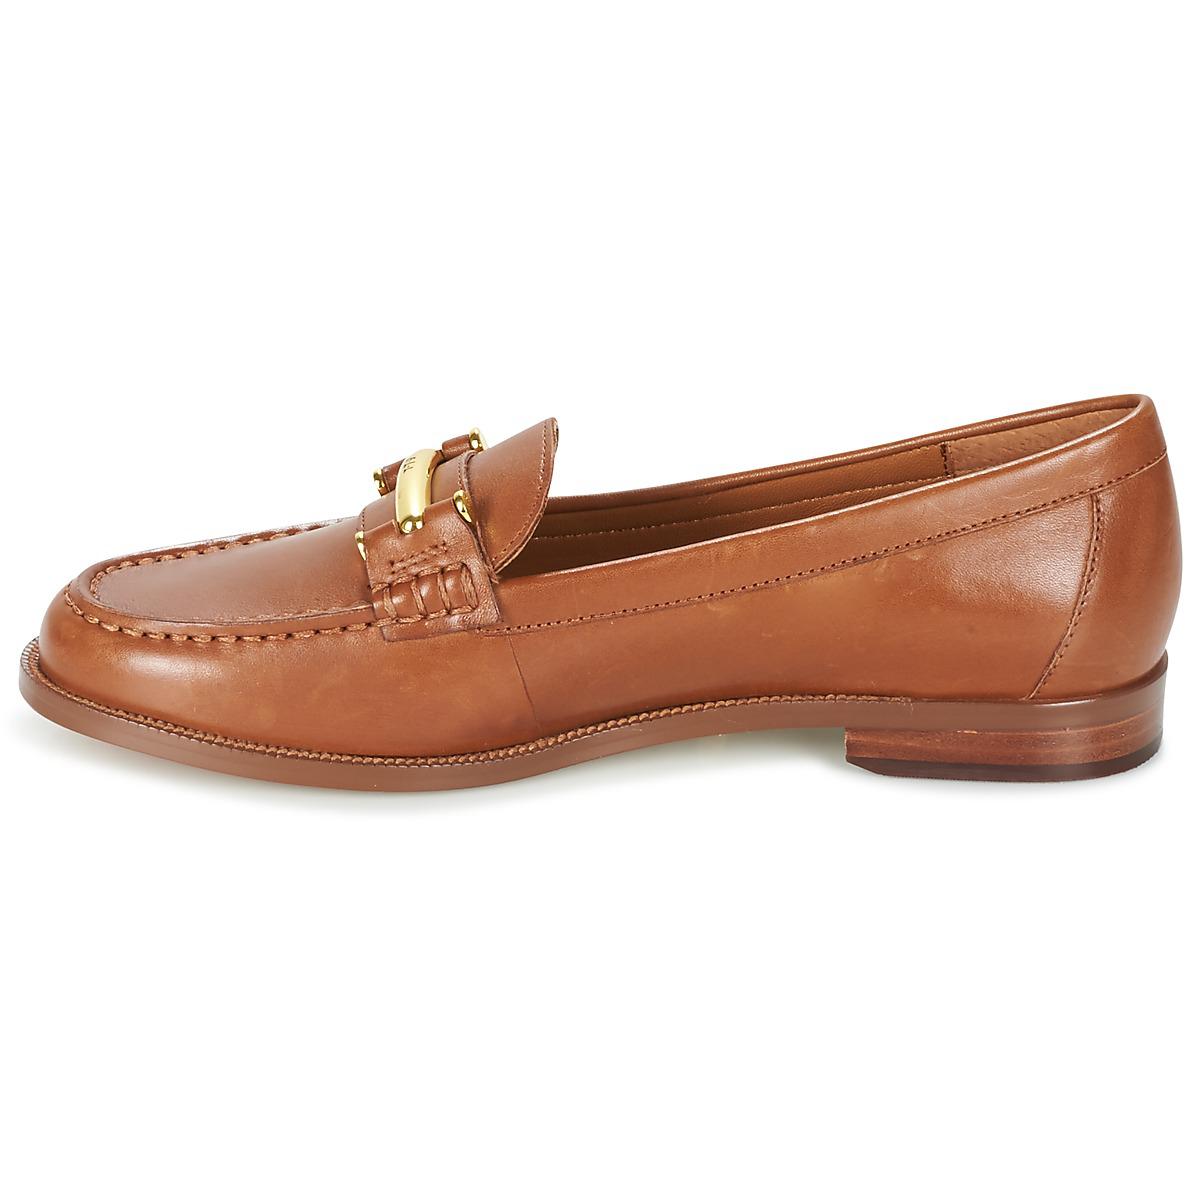 Lauren by Ralph Lauren Flynn Women's Loafers / Casual Shoes In Brown - Lyst